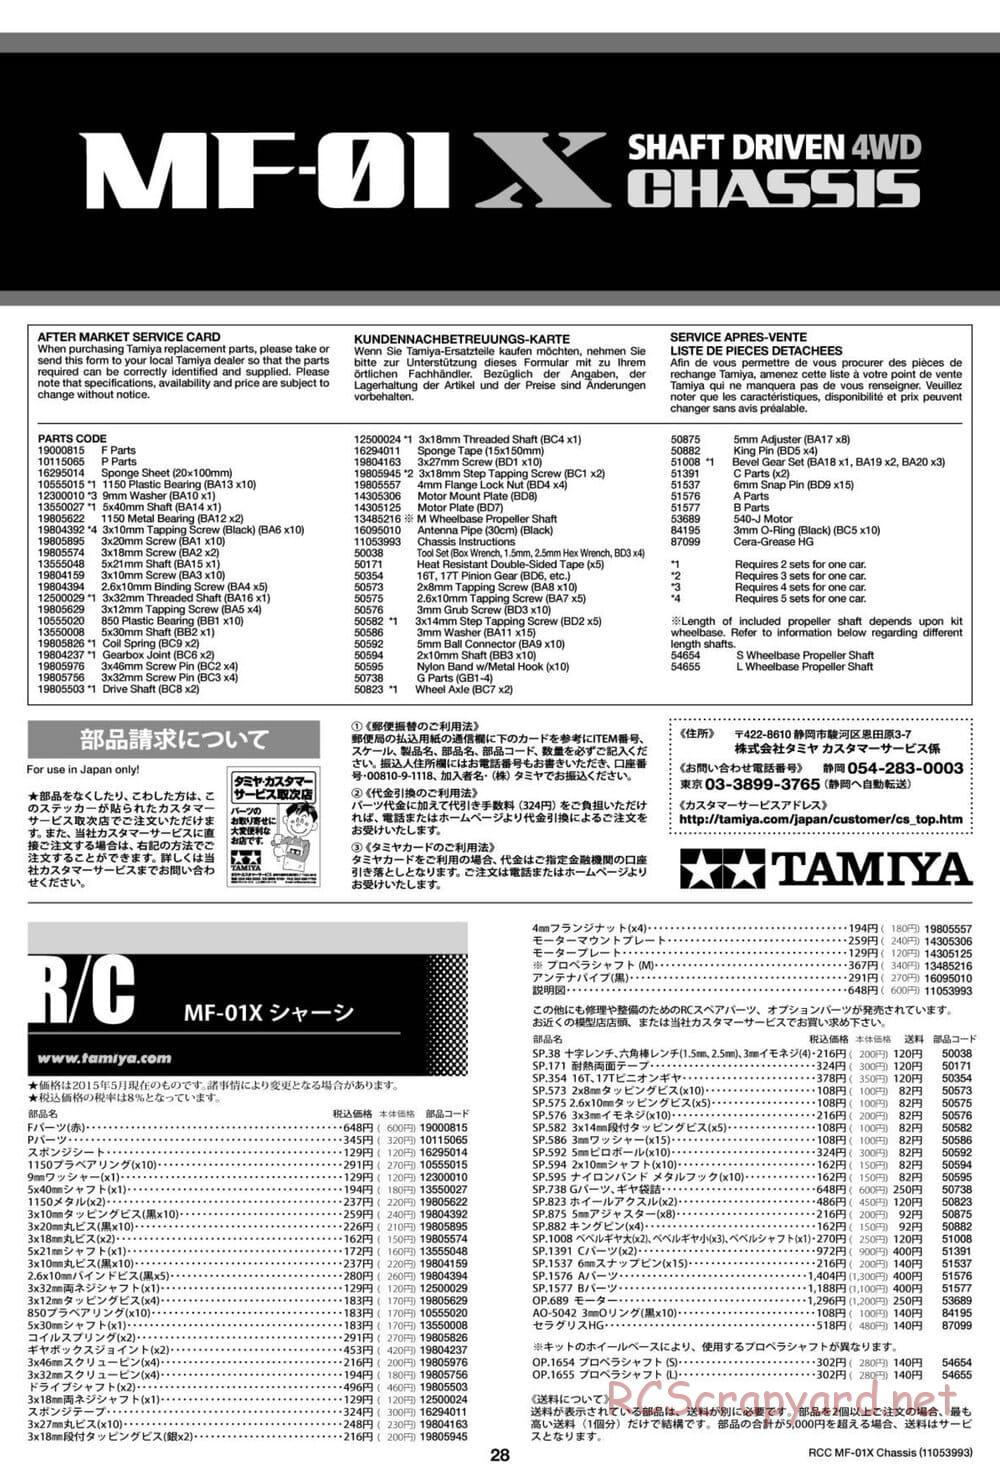 Tamiya - MF-01X Chassis - Manual - Page 28